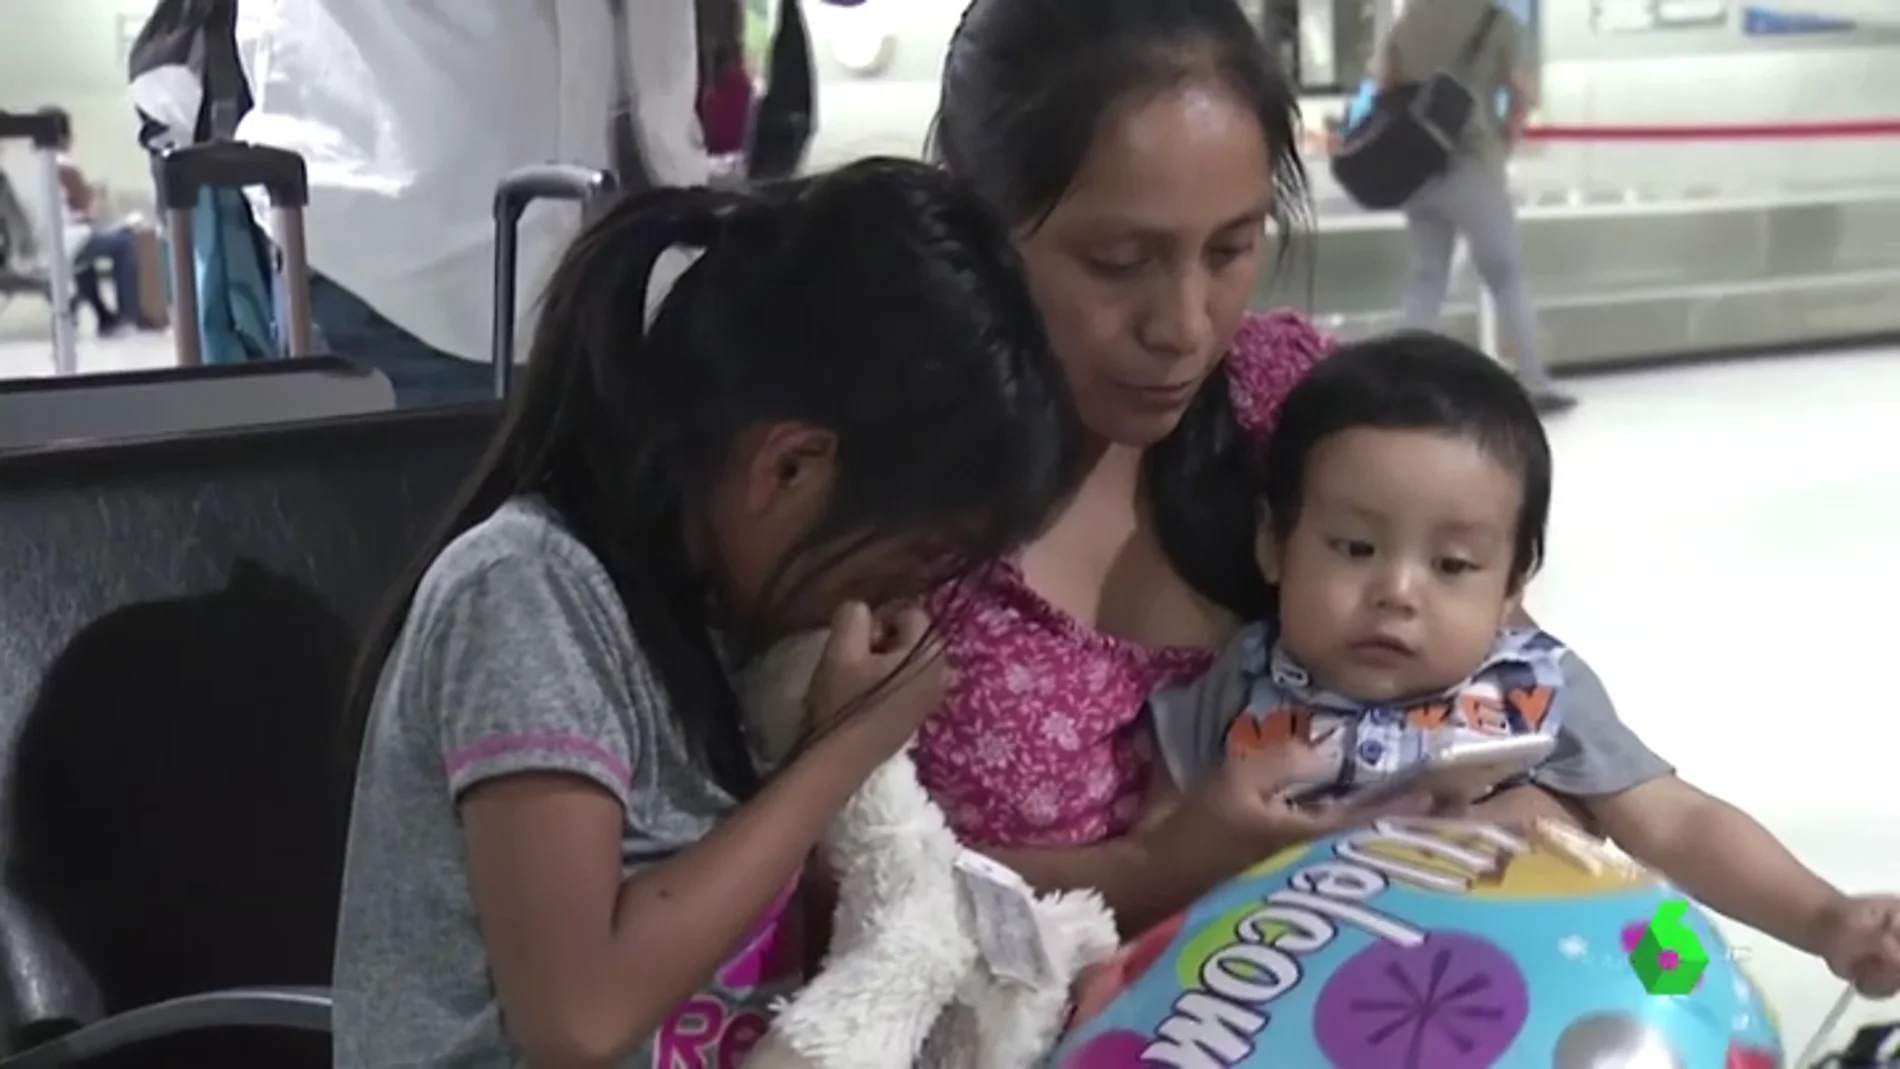 Lleno de piojos y polvo: así le devolvieron a una madre su bebé tras 85 días separados en Estados Unidos 